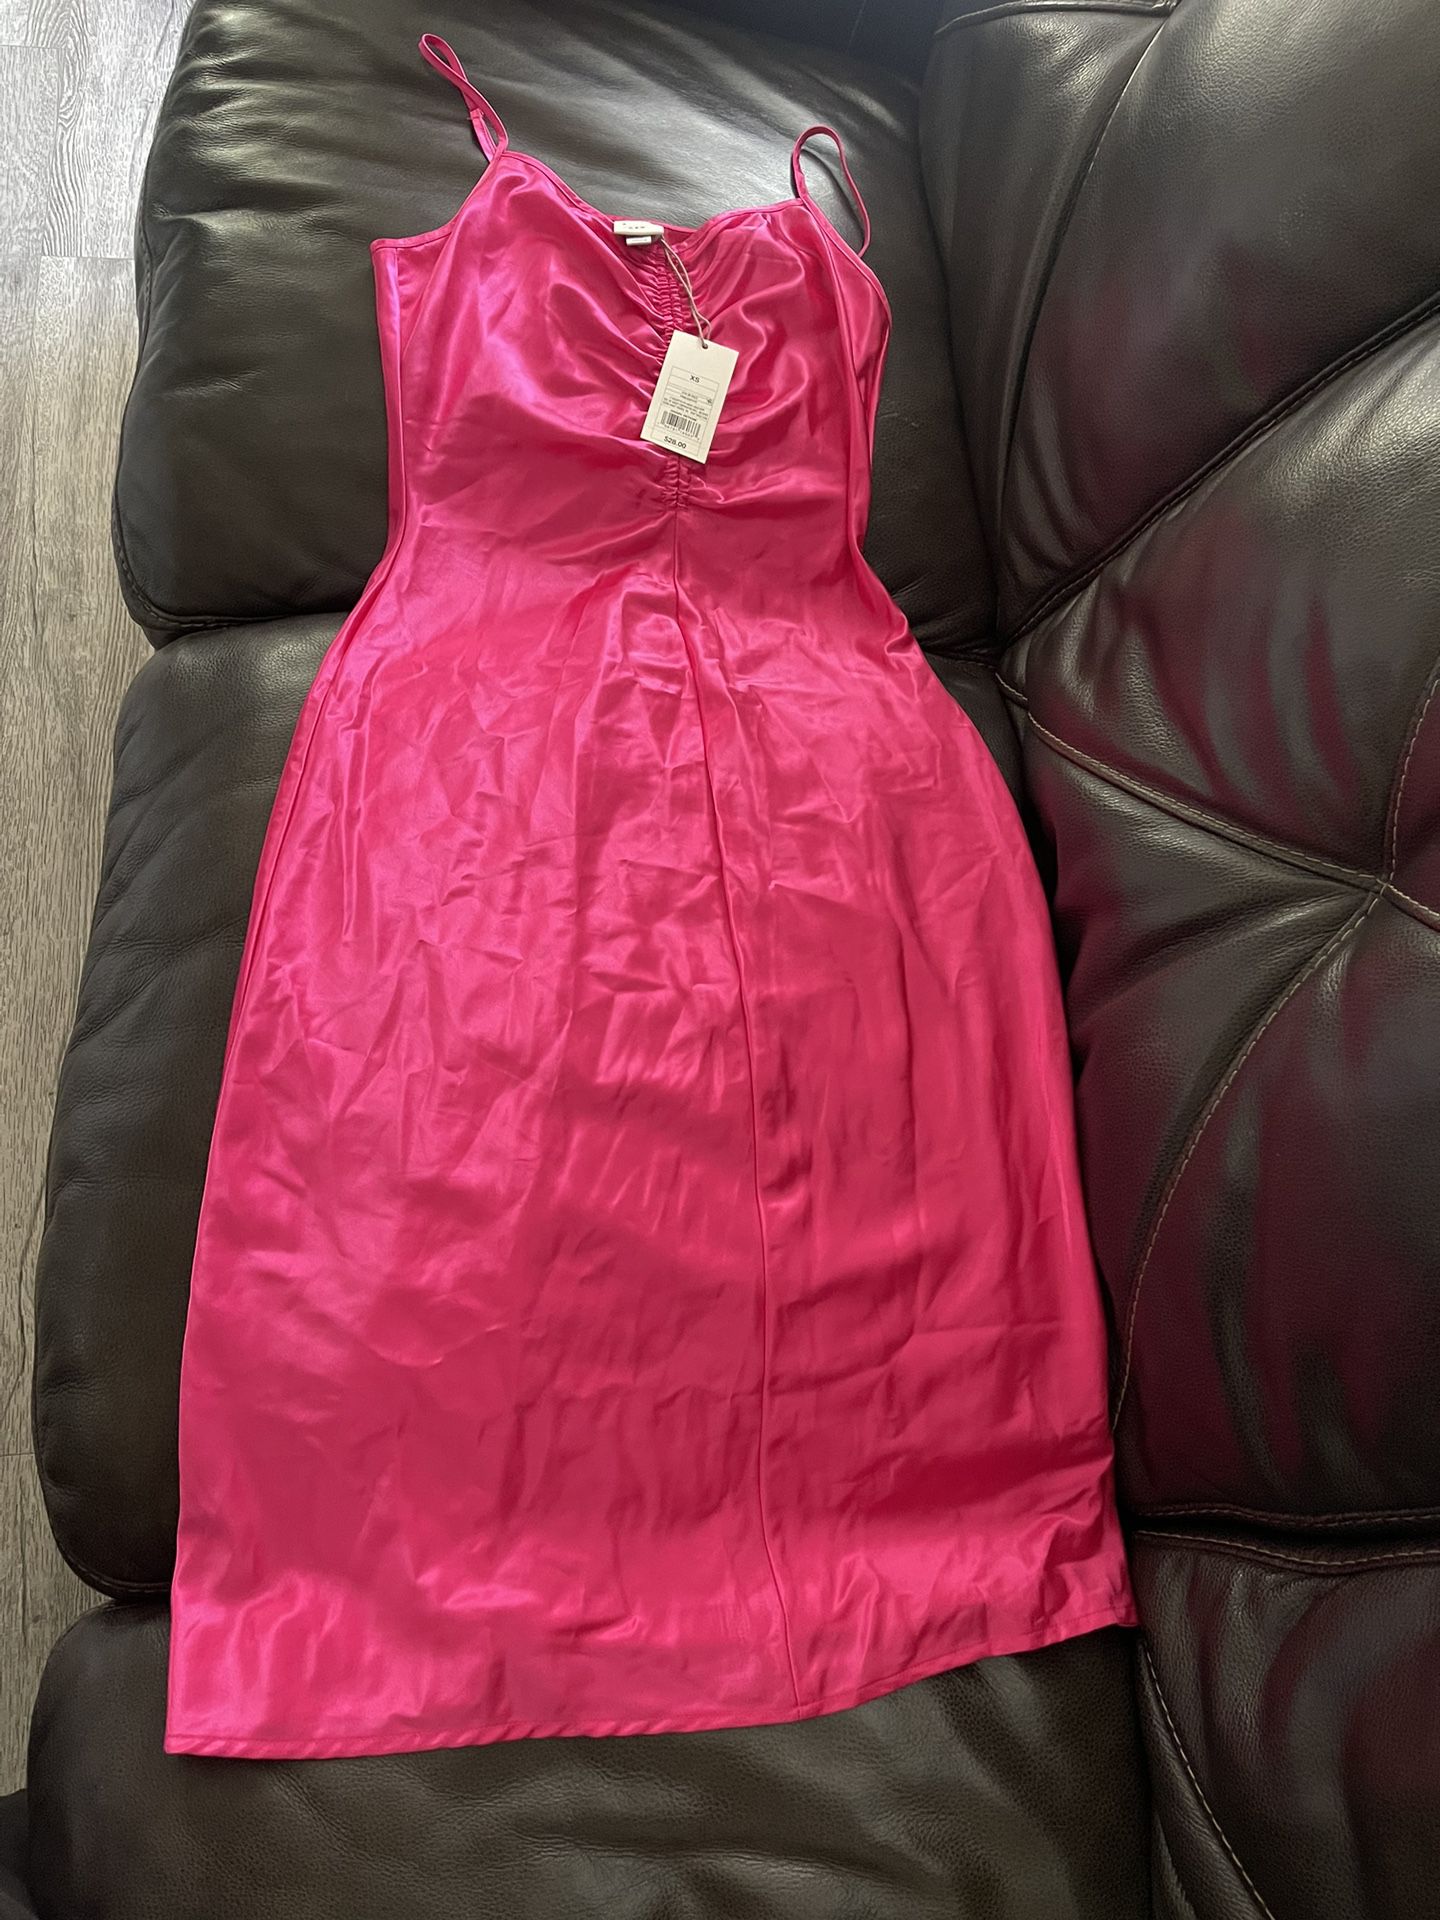 Hot Pink Dress 